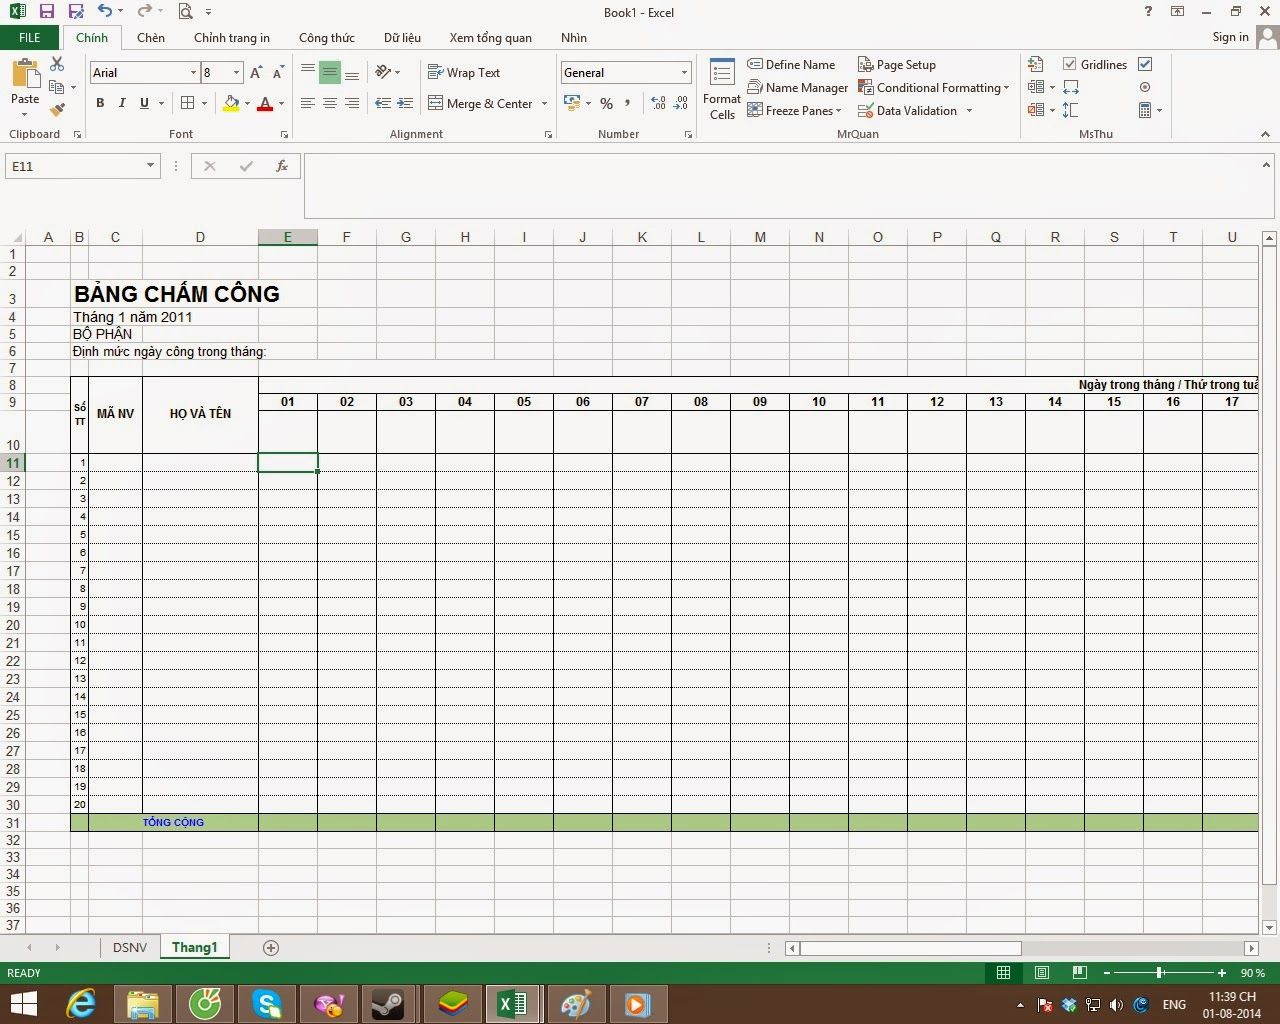 Cách tính bảng chấm công trong excel được thực hiện như thế nào? Hướng dẫn cách tạo bảng chấm công trên Excel chi tiết nhất 31